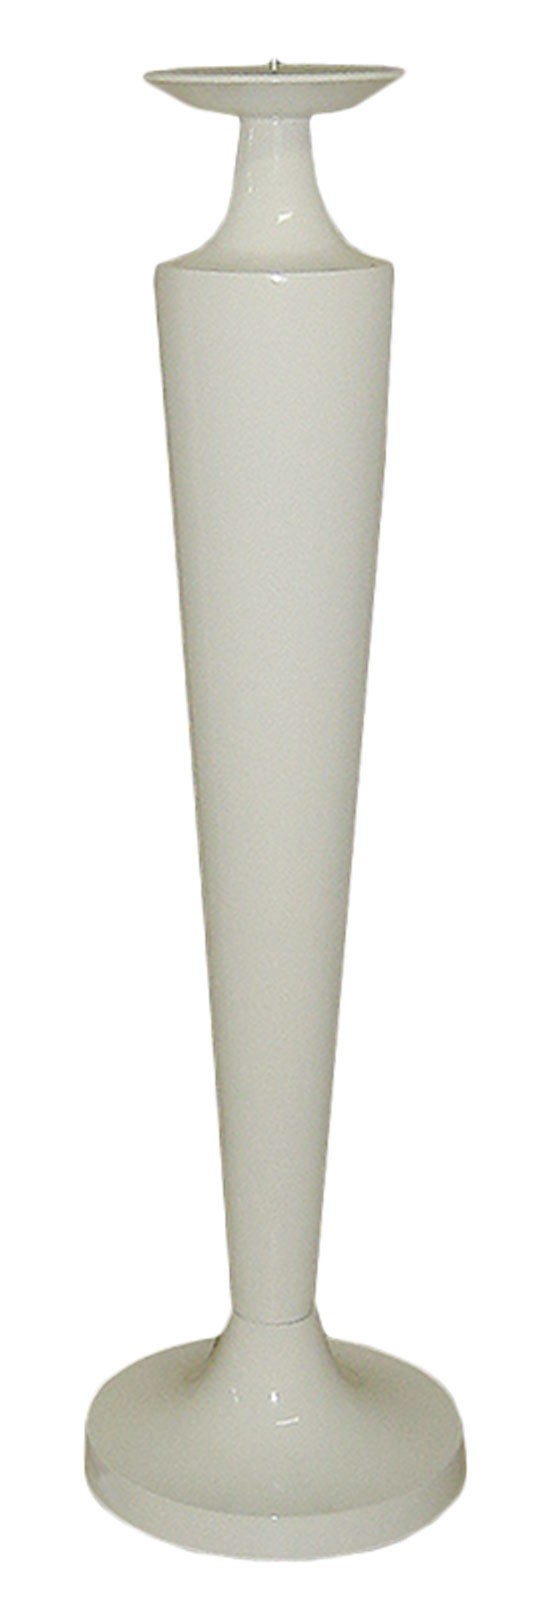 Aluminium Round Candle Stick - Cream (70cm)